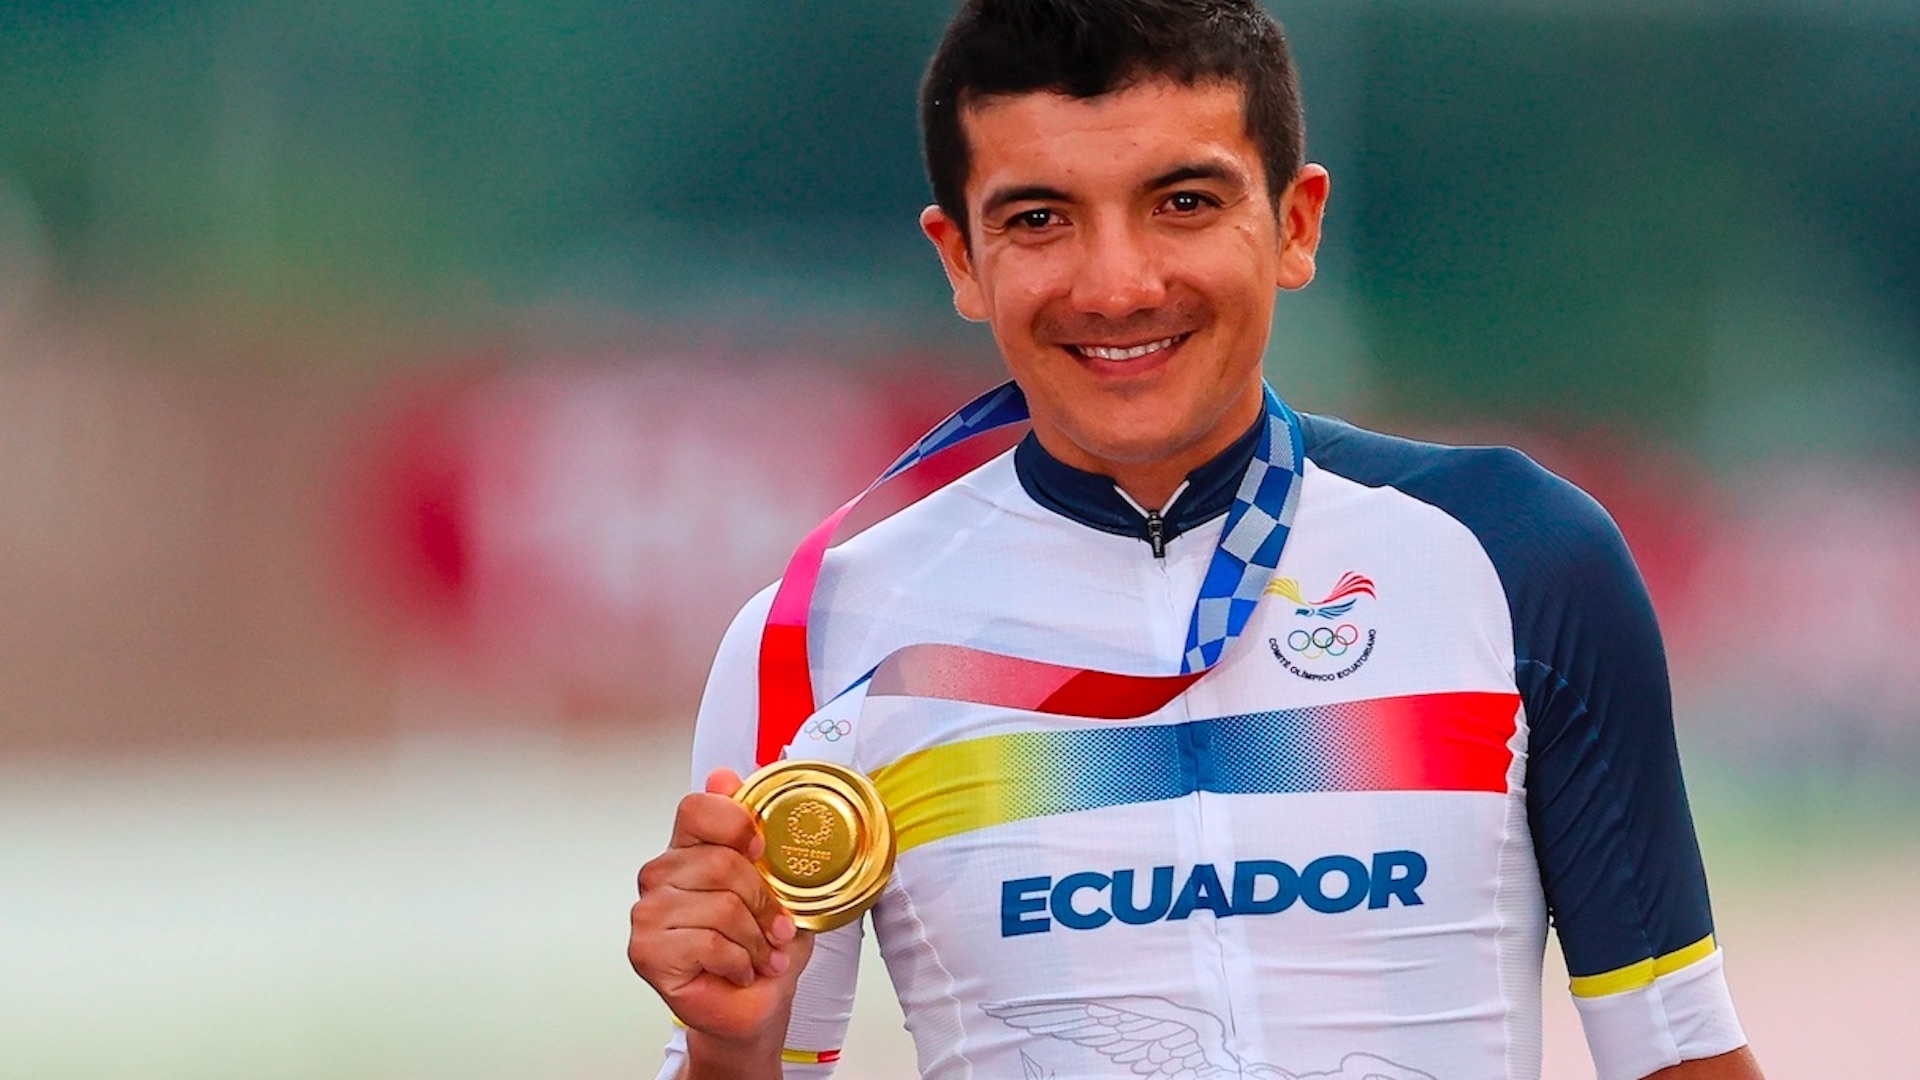 El ecuatoriano Richard Carapaz, campeón olímpico de ciclismo en ruta